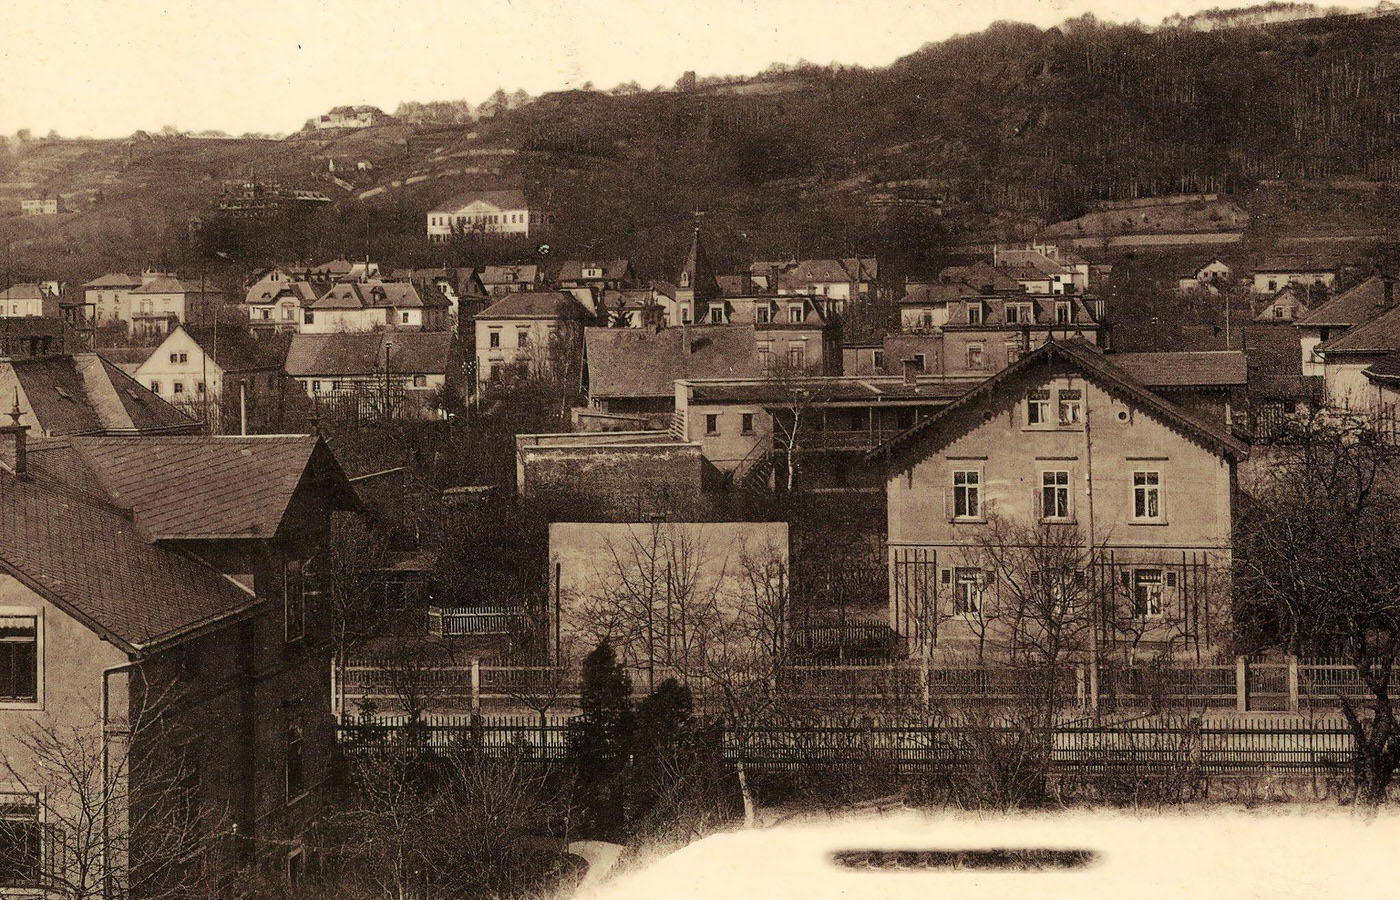 Buildings in Radebeul, Oberlossnitz, Landkreis Meissen, Germany, 1903.